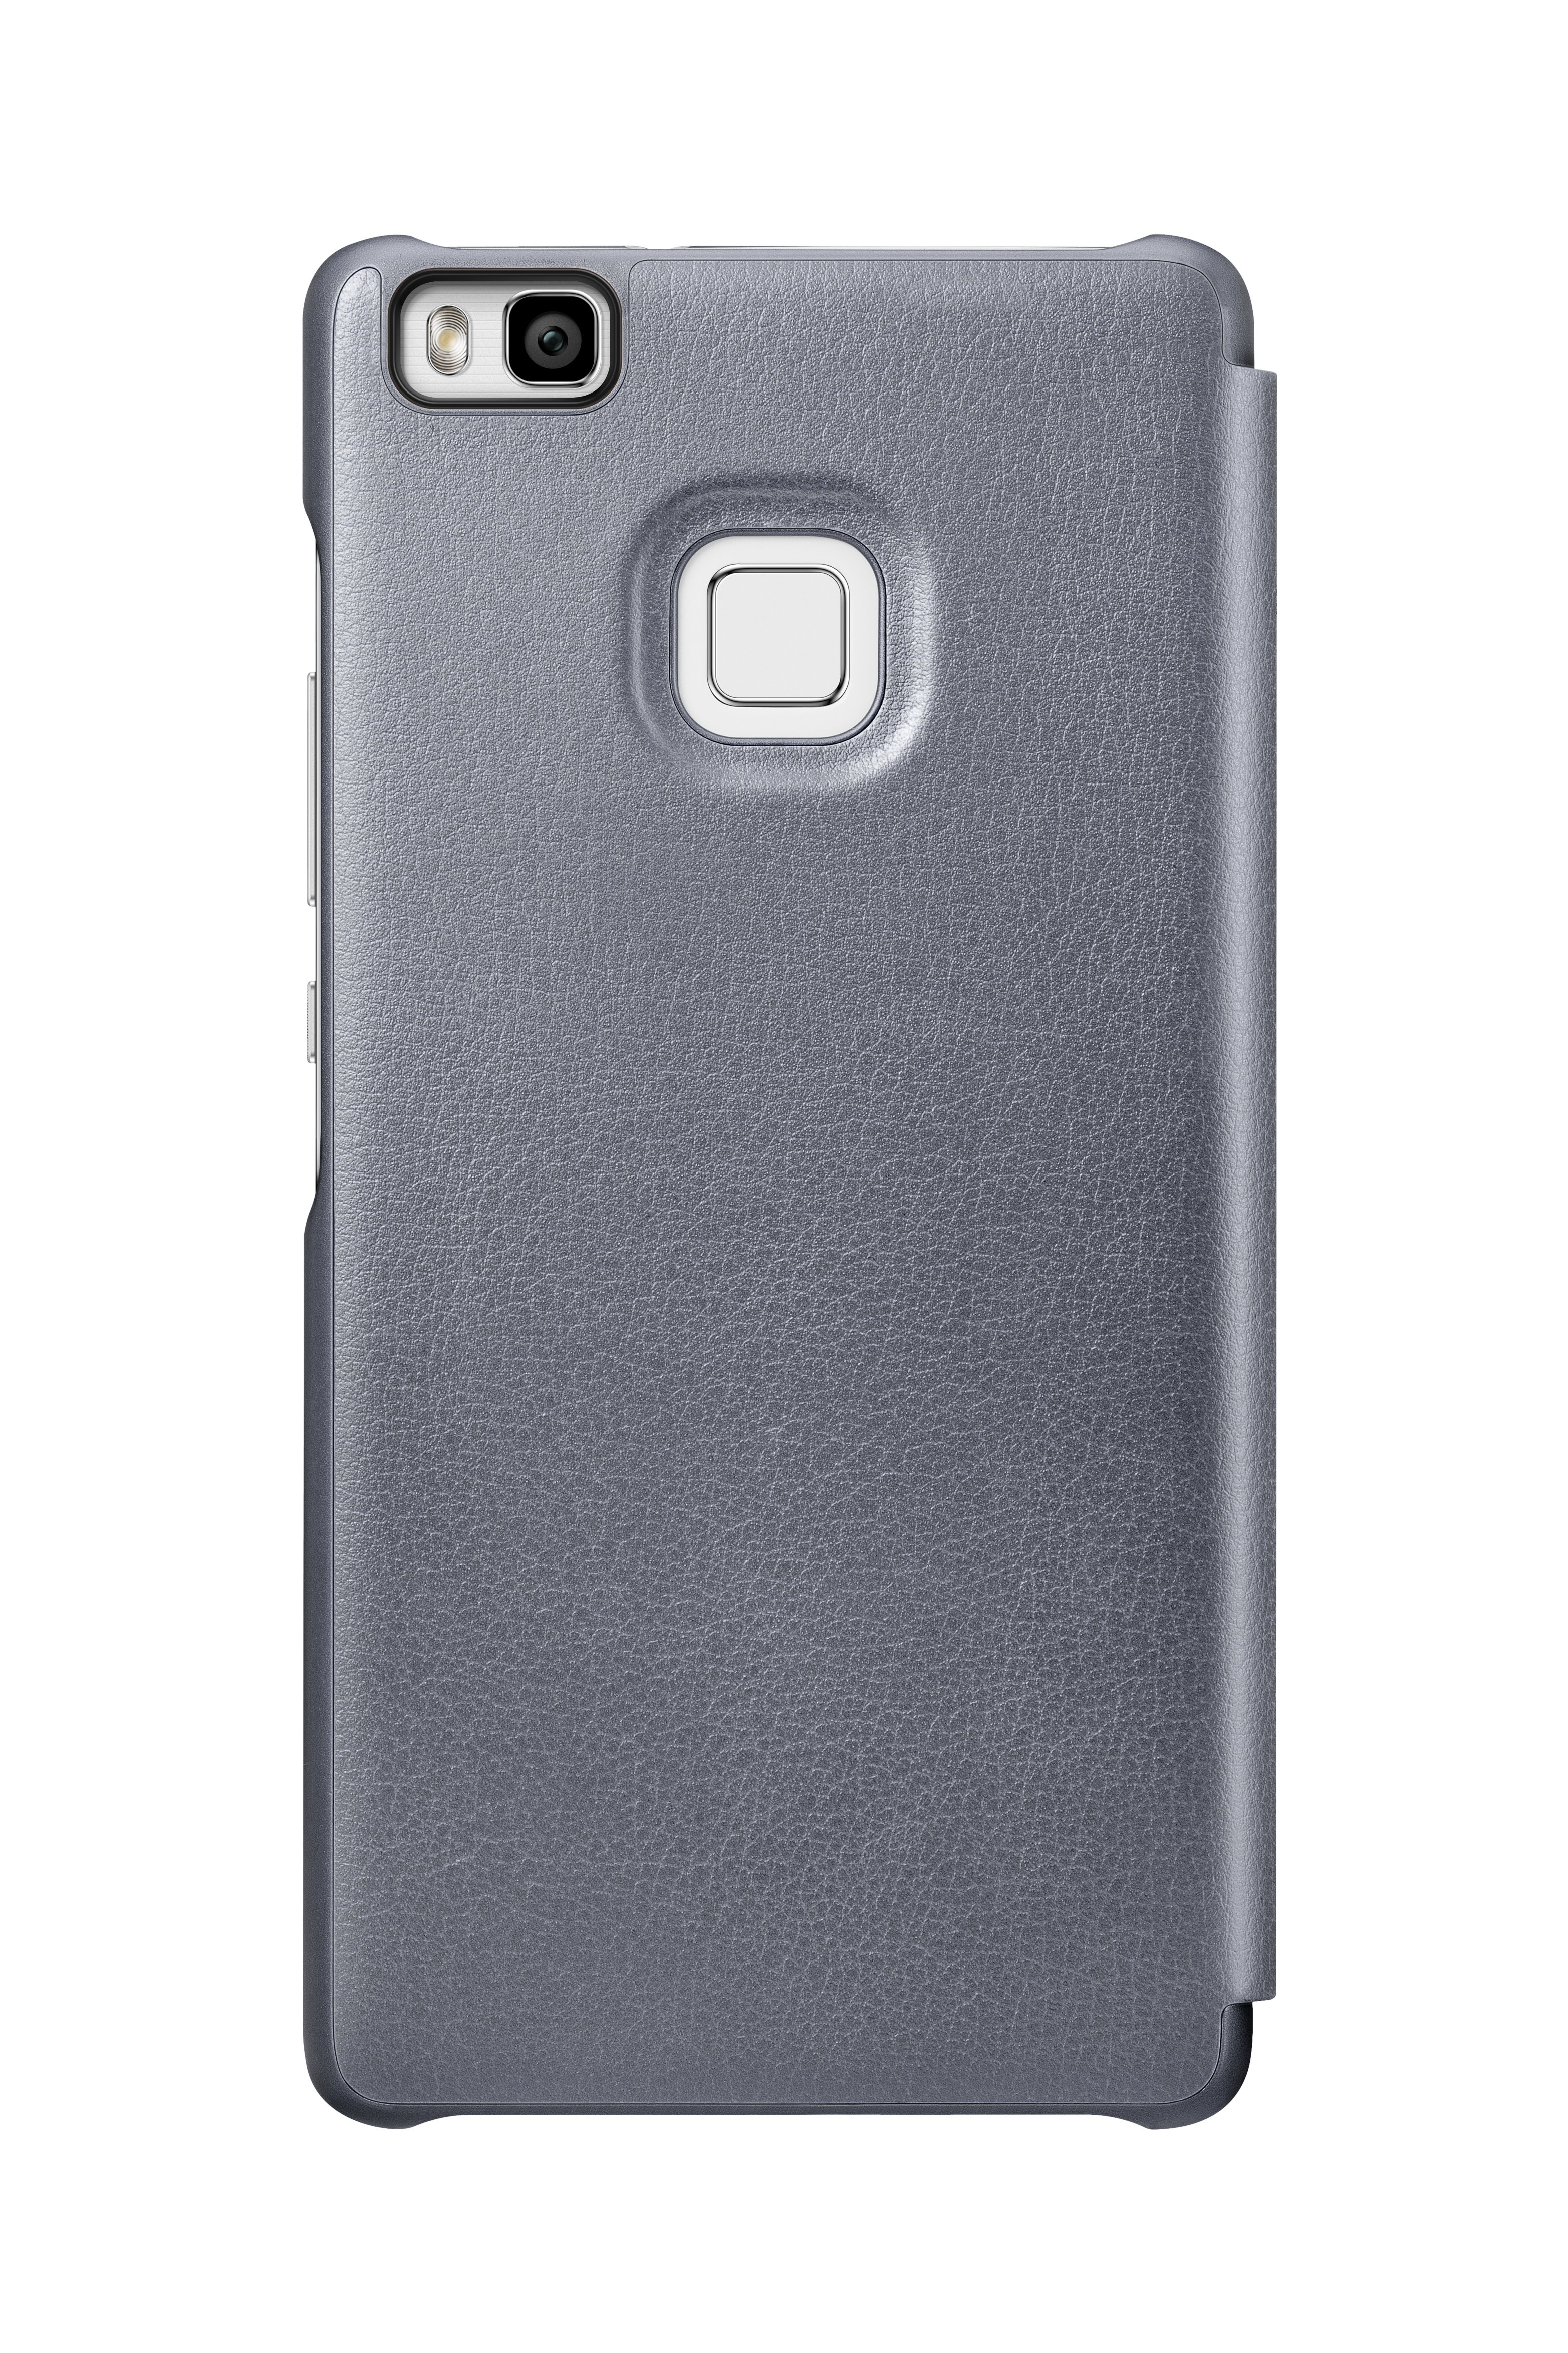 Grau Huawei, Flip 51991527, P9 Cover, lite, HUAWEI